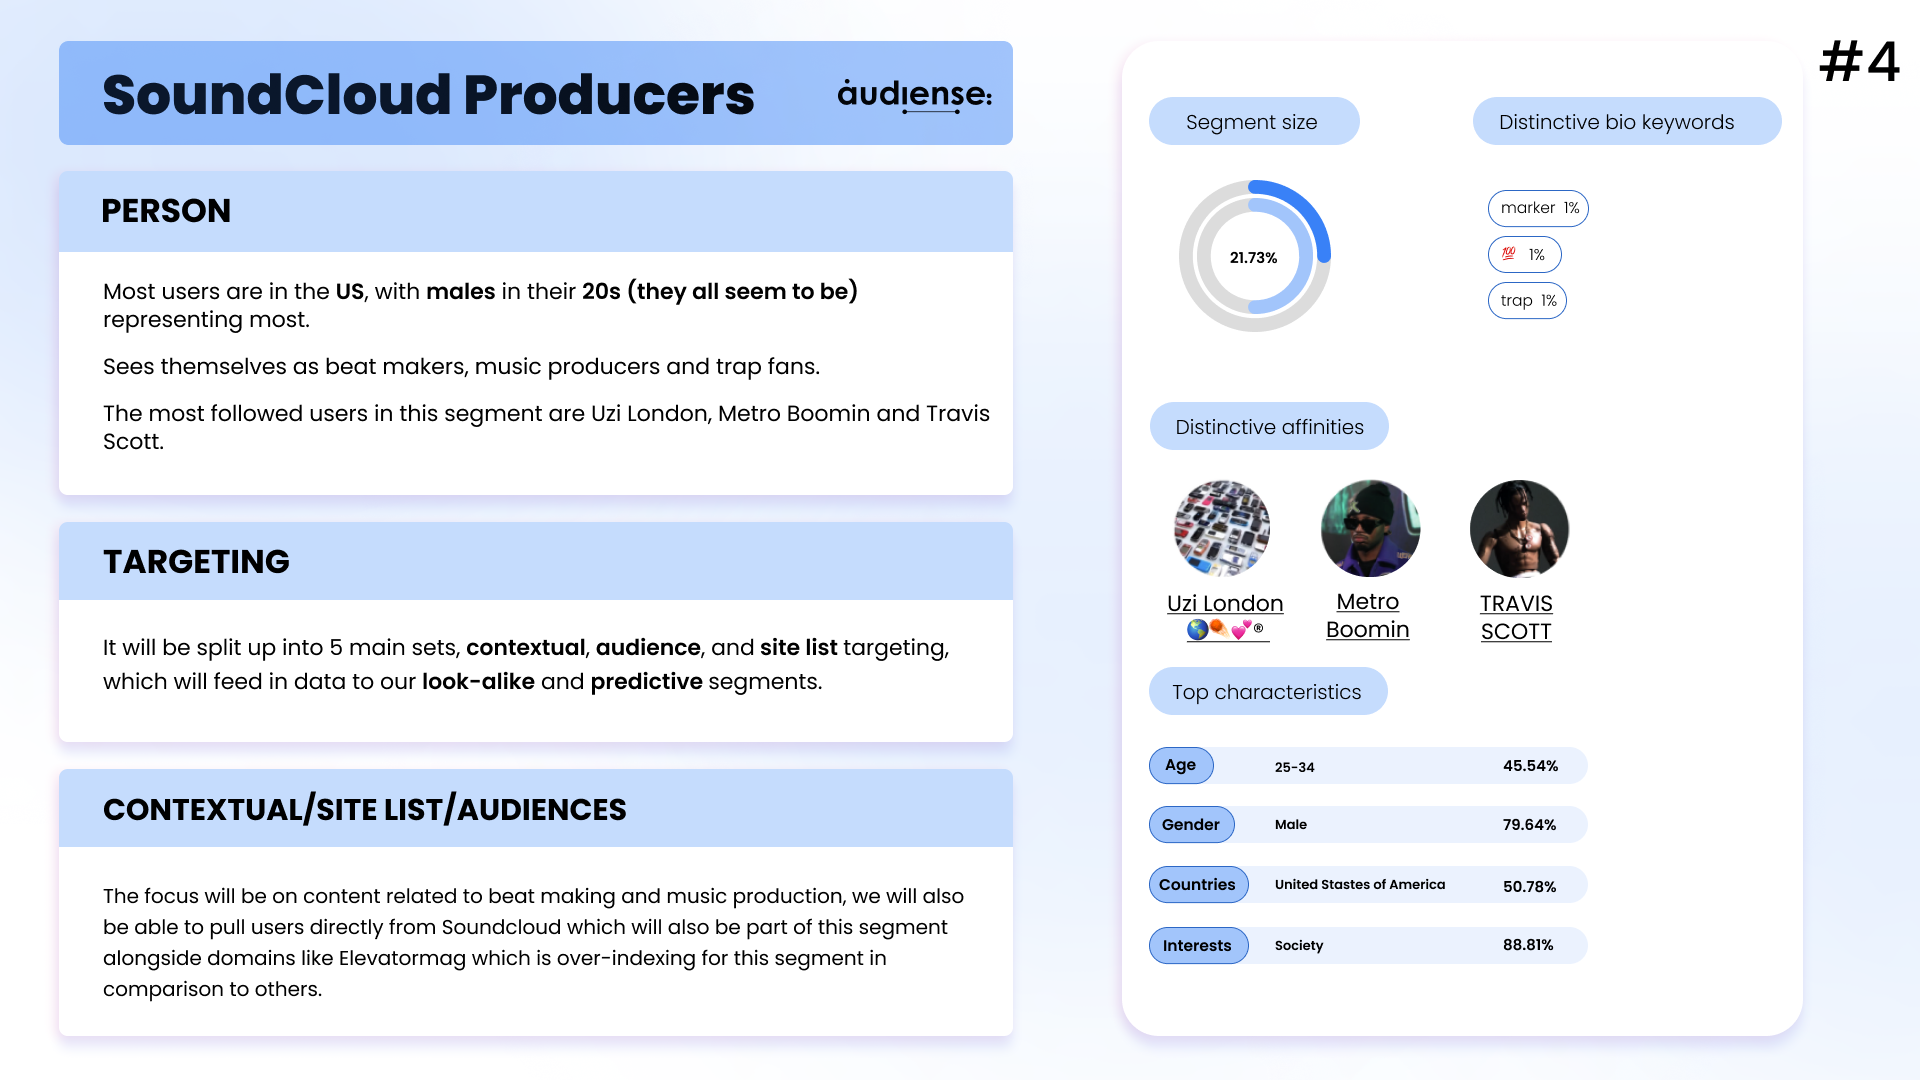 Audiense blog - segmento Productores de SoundCloud